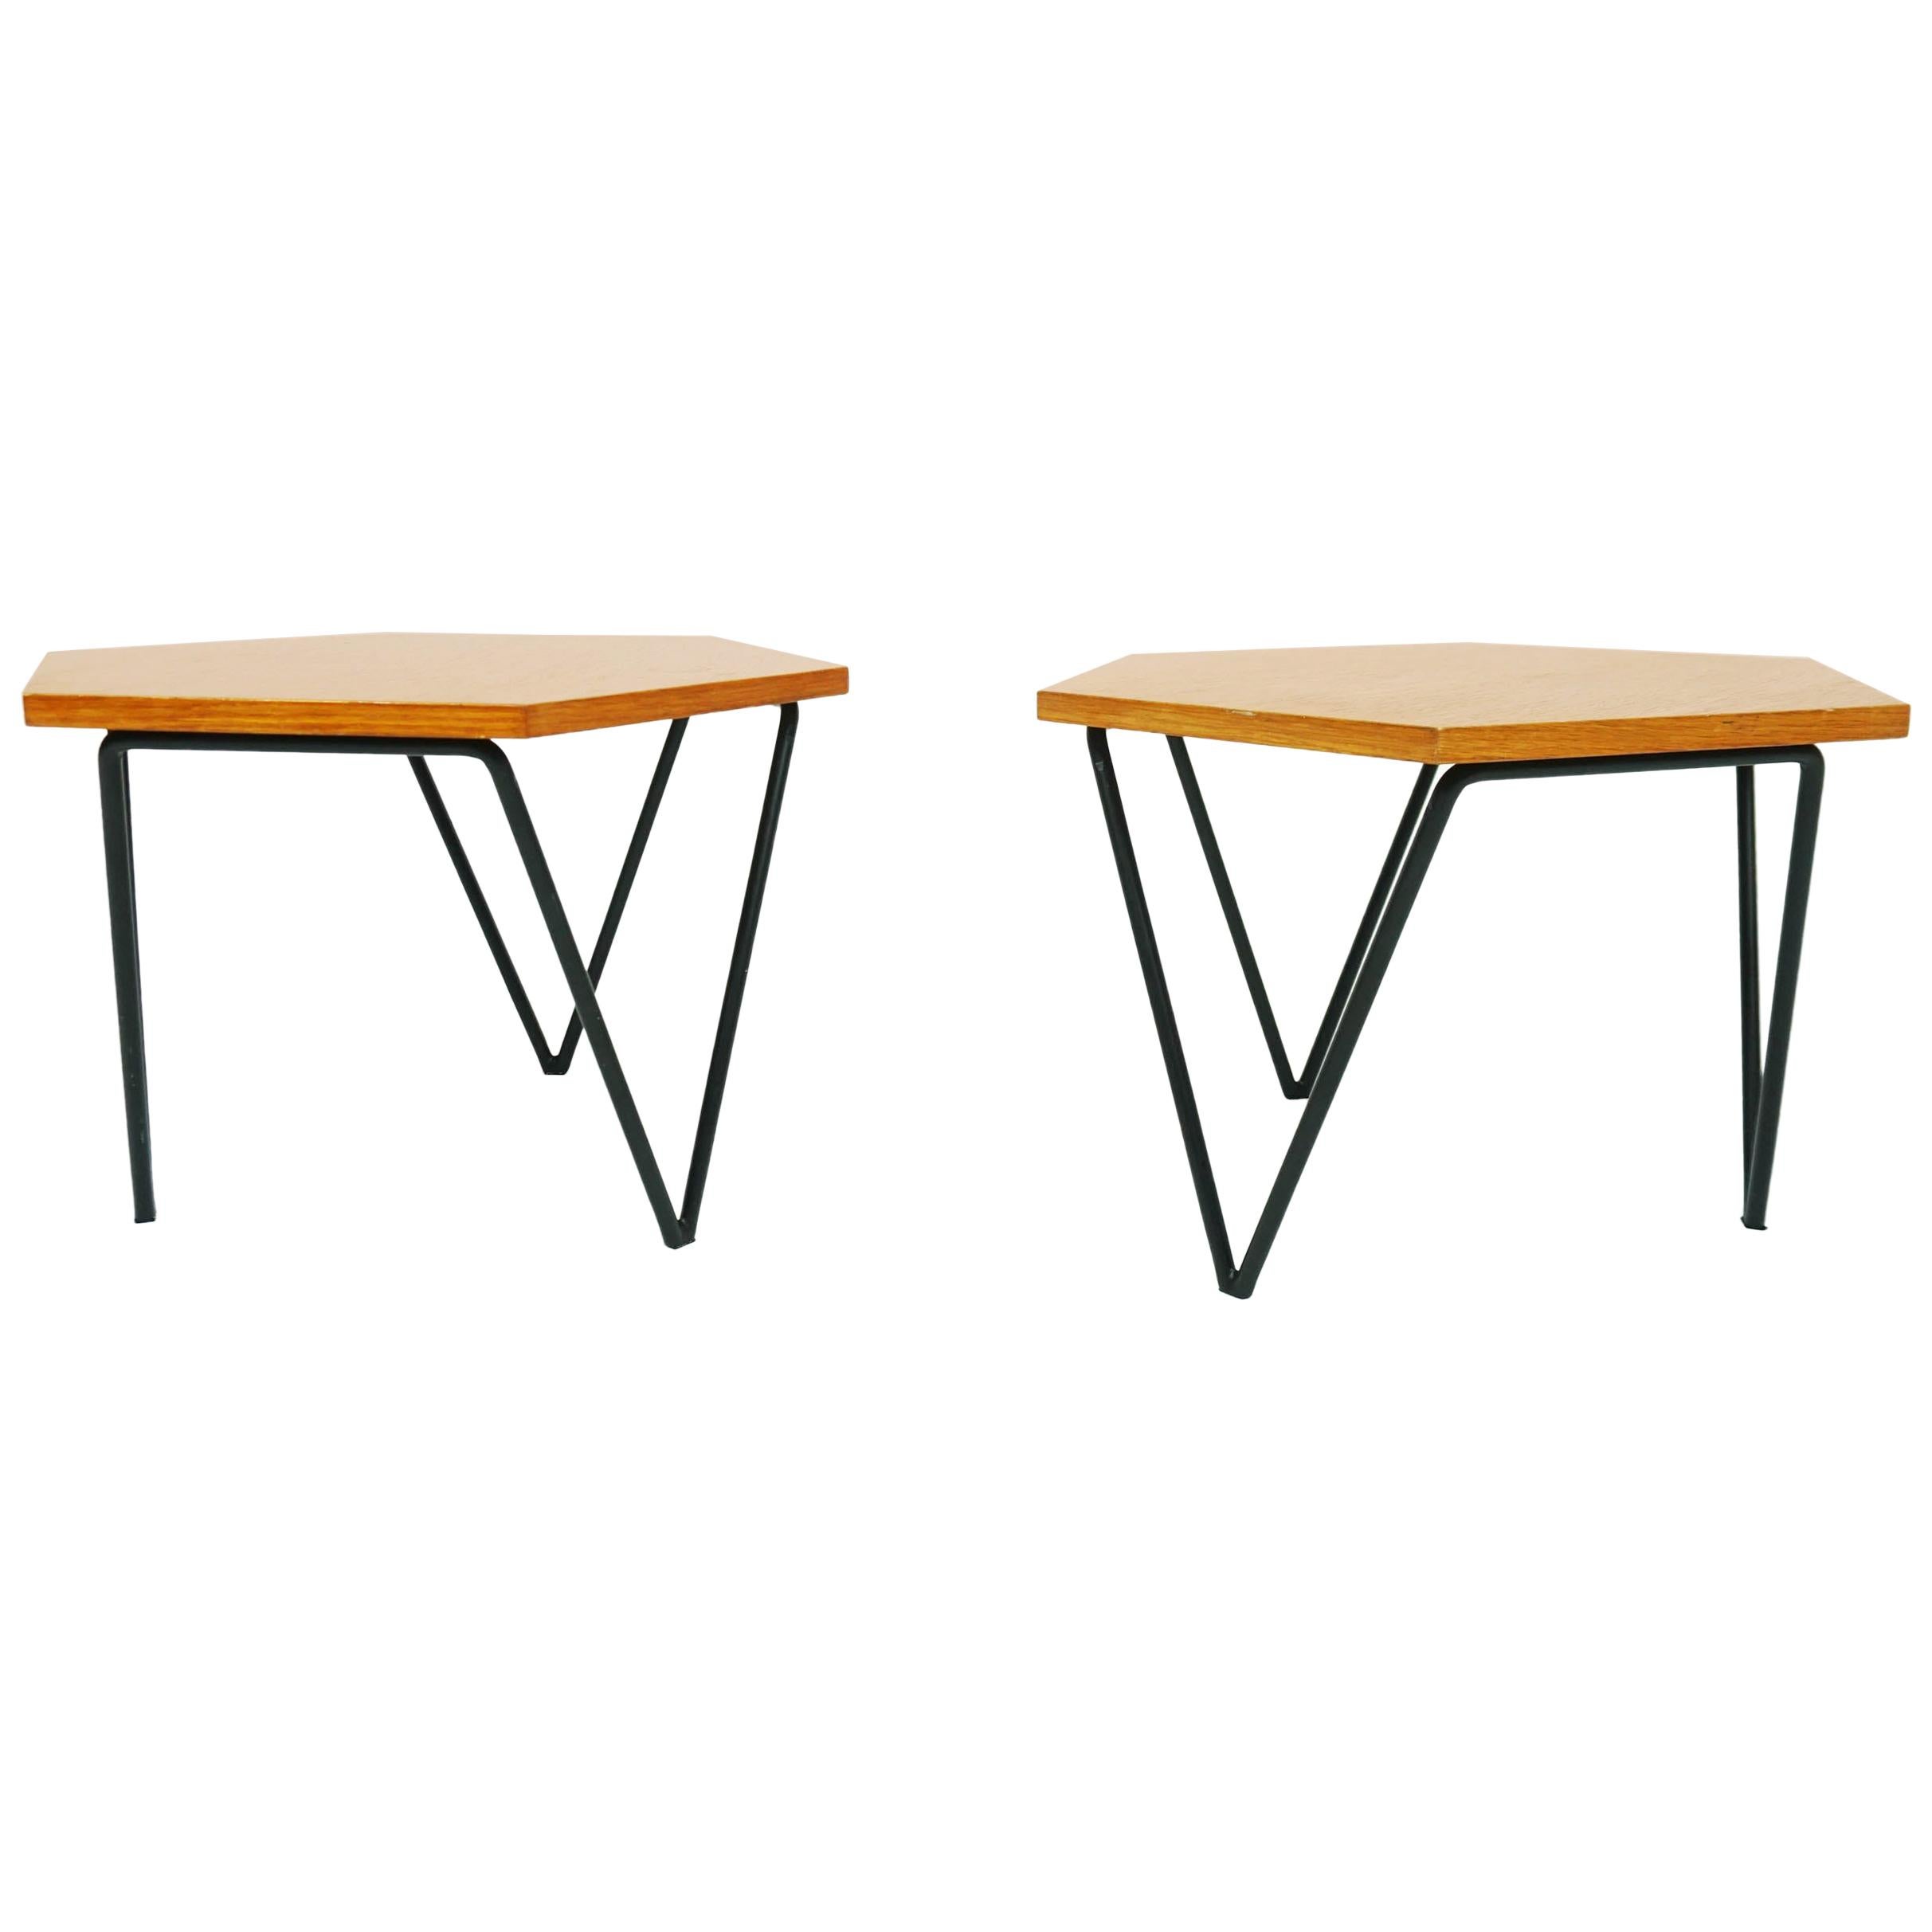 Gio Ponti 1955 ISA Hexagonal Modular Coffee Tables in Ash and Metal